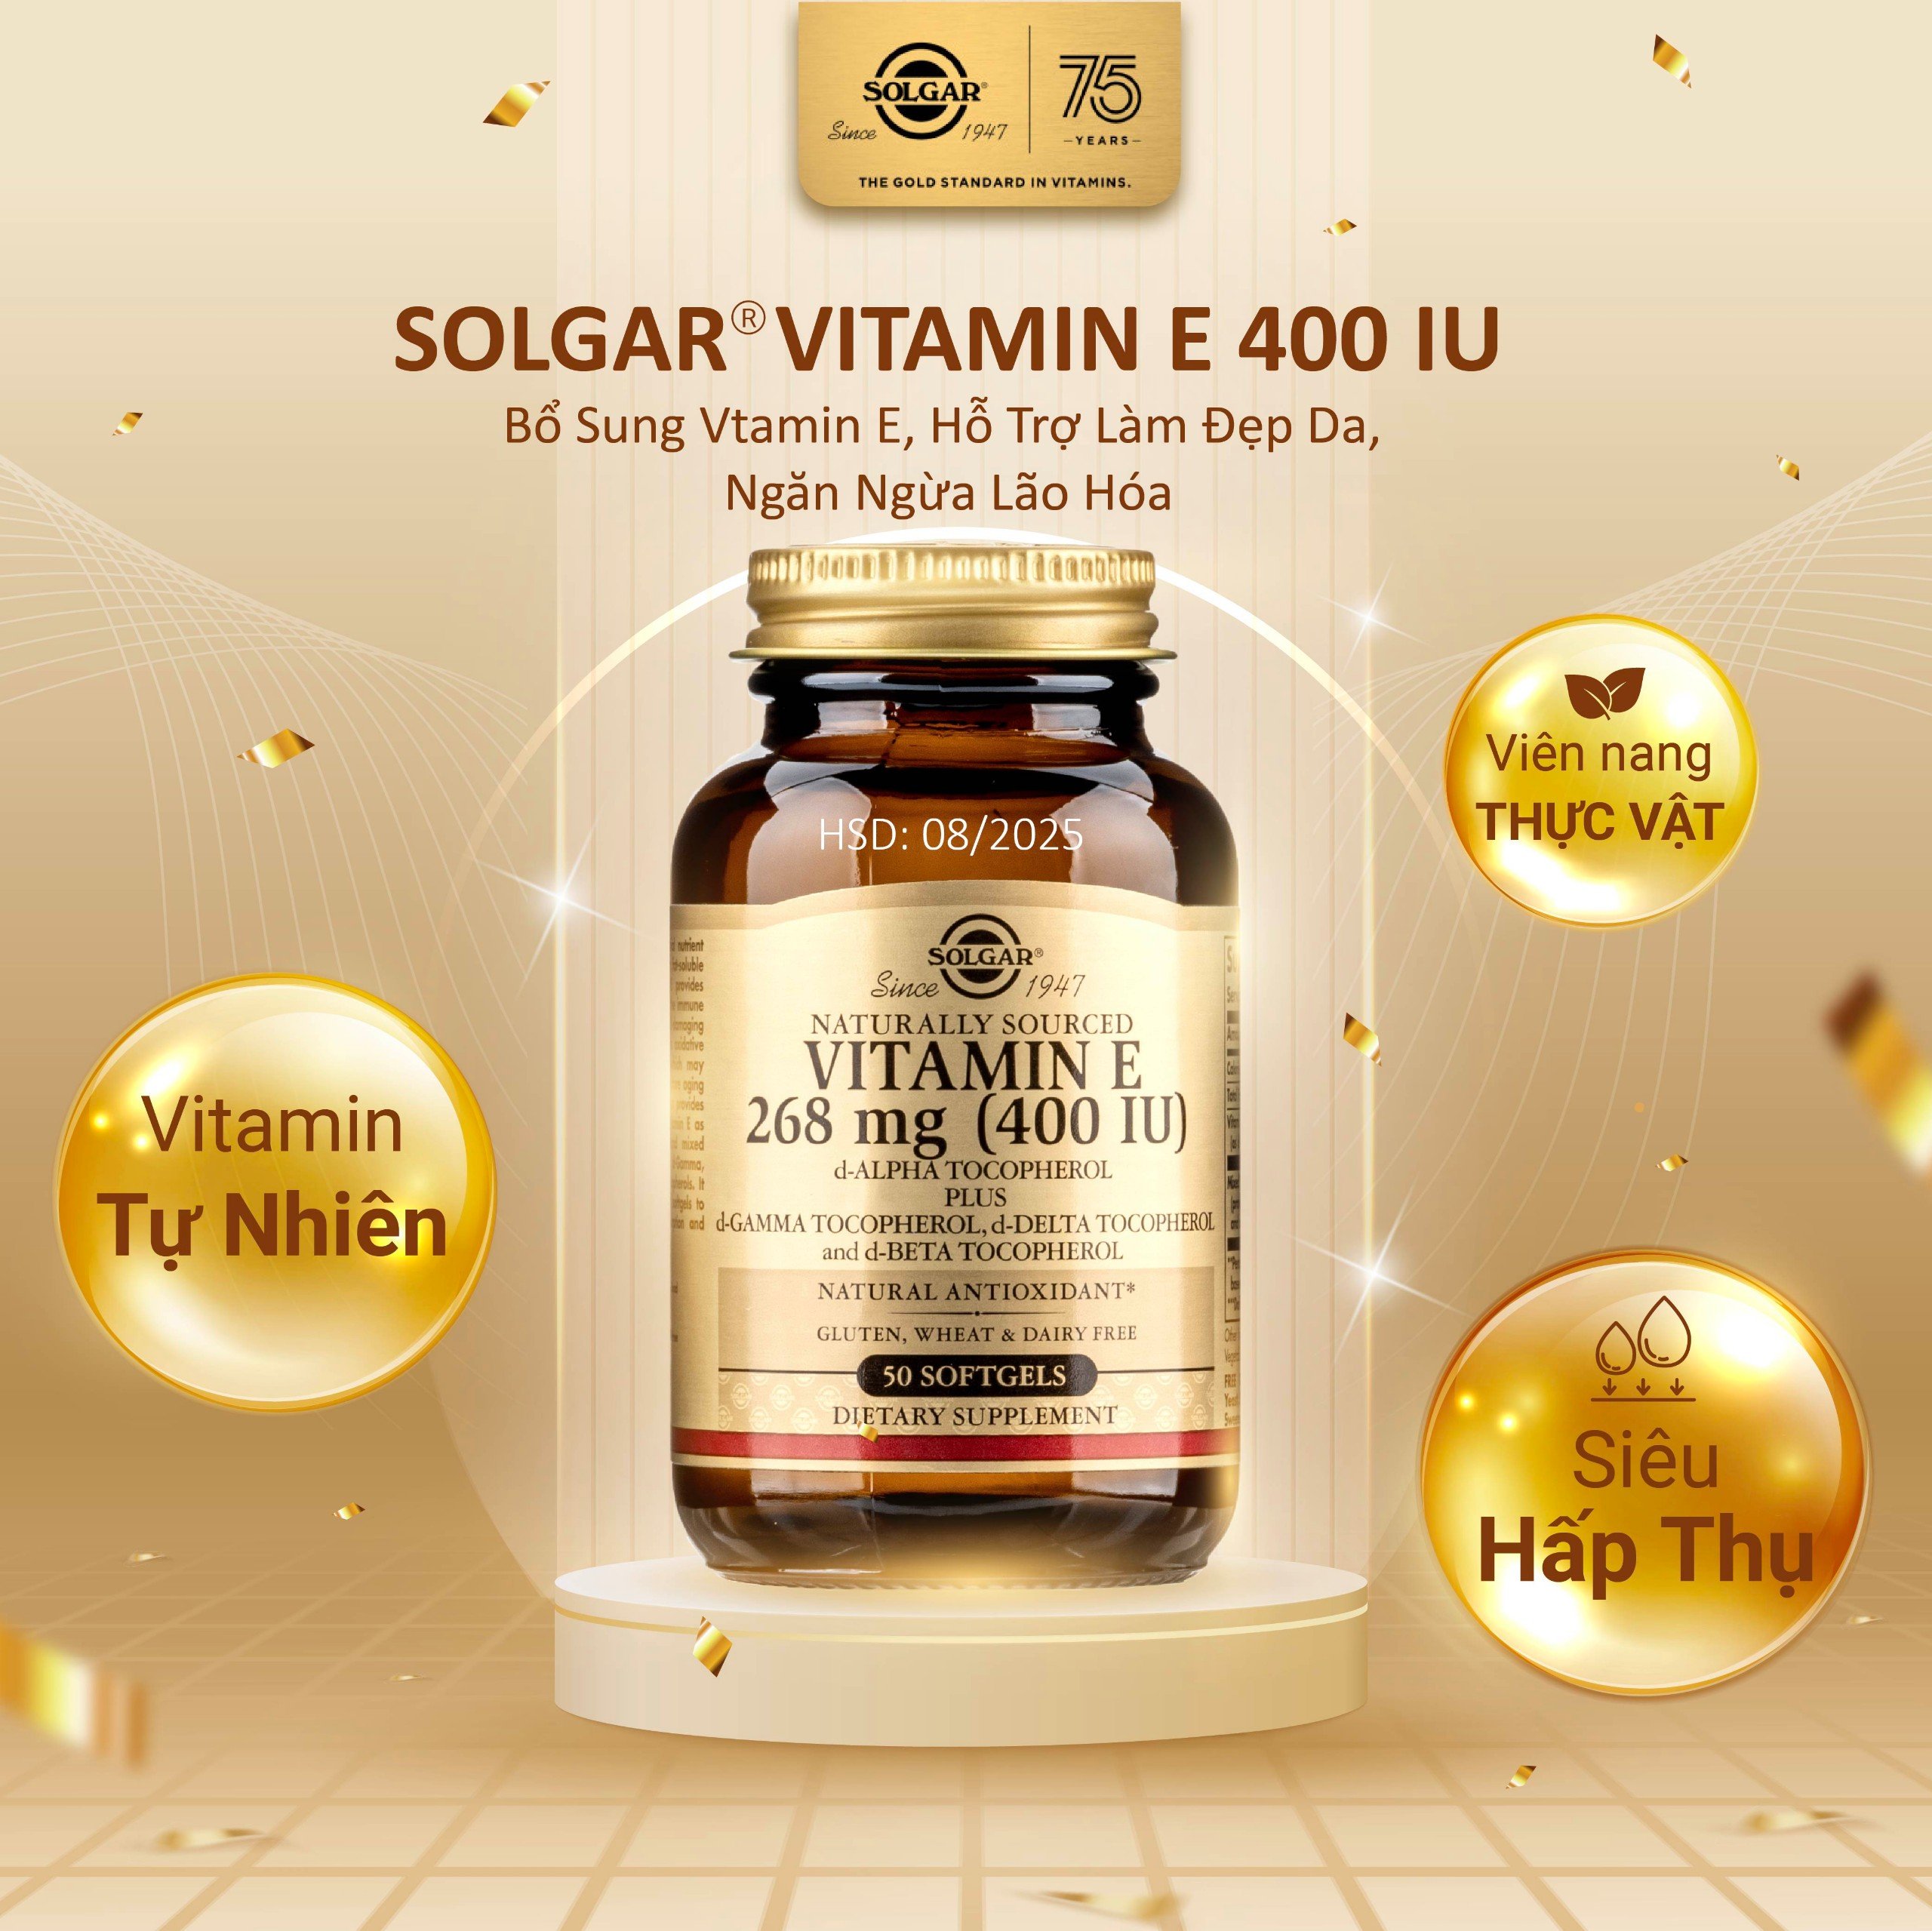 Combo Làm Đẹp - Solgar Vitamin E và Evening Primrose Oil Làm Đẹp Da, Tăng Cường Nội Tiết Tố Nữ